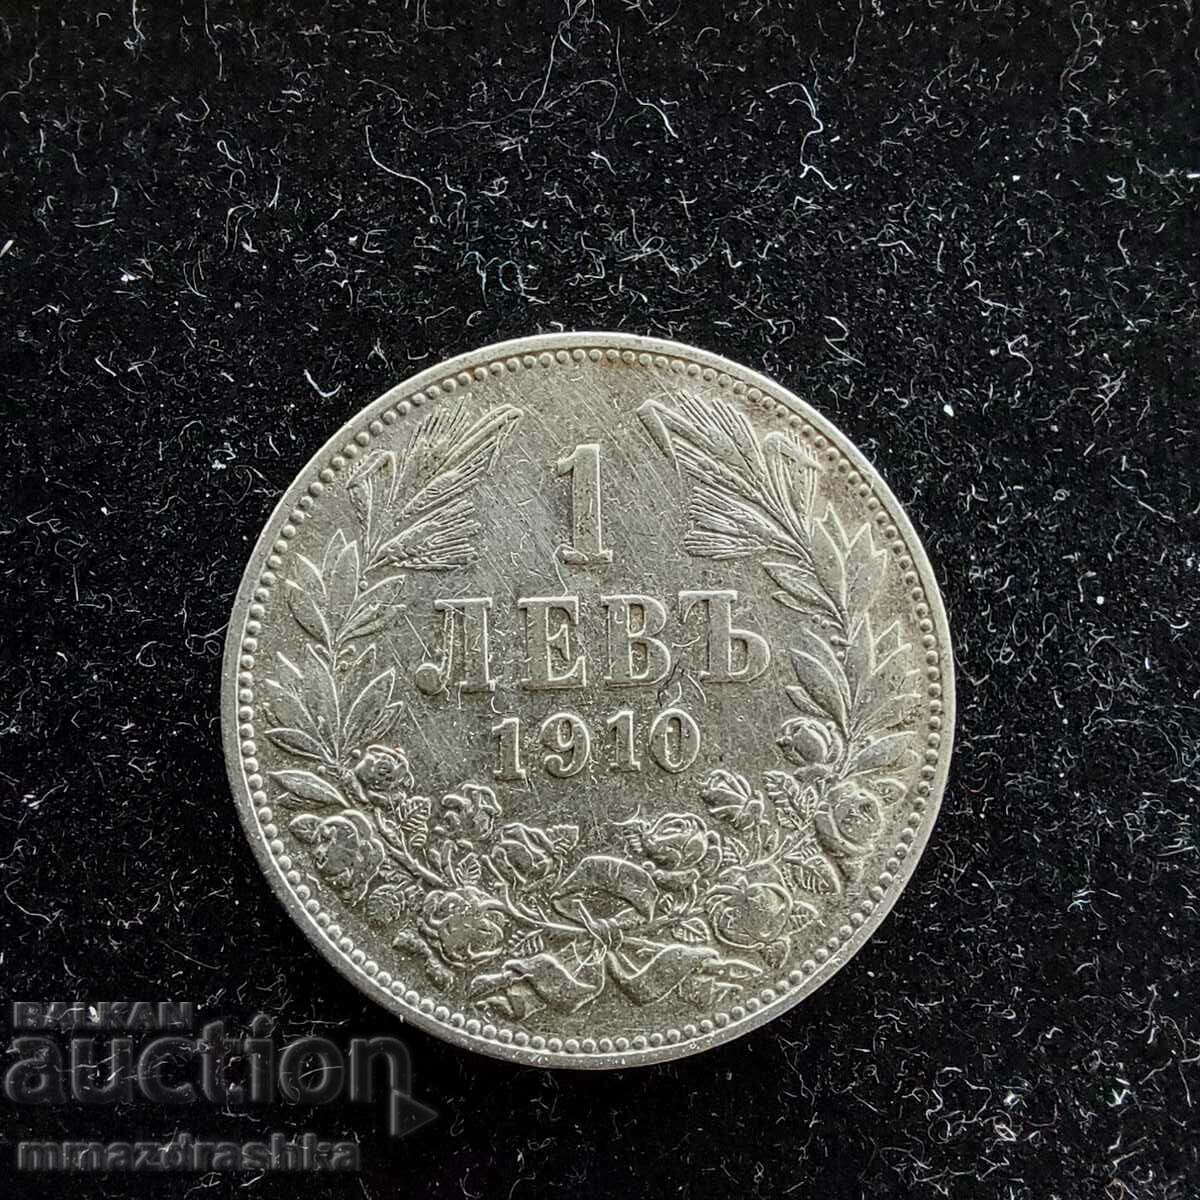 1 lev, 1910s, Silver